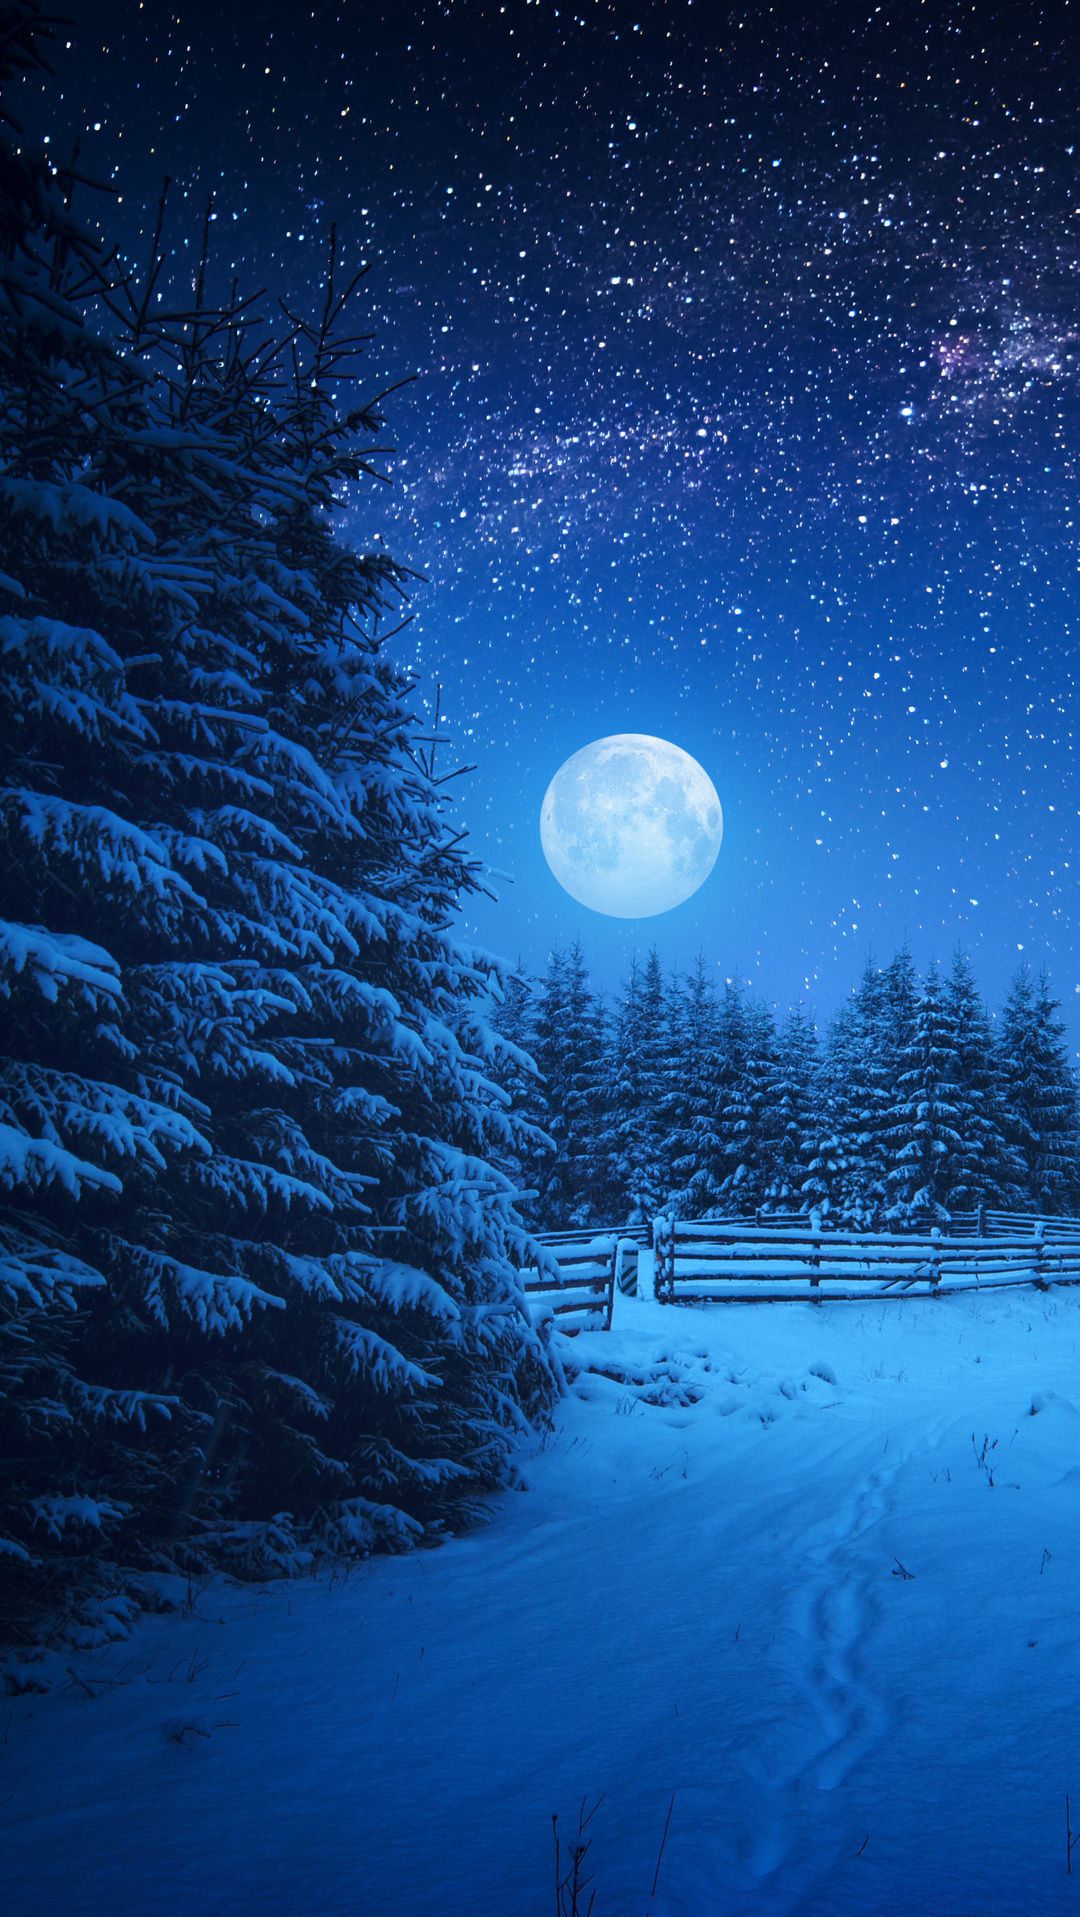 Moon Night in Winter Season Wallpaper